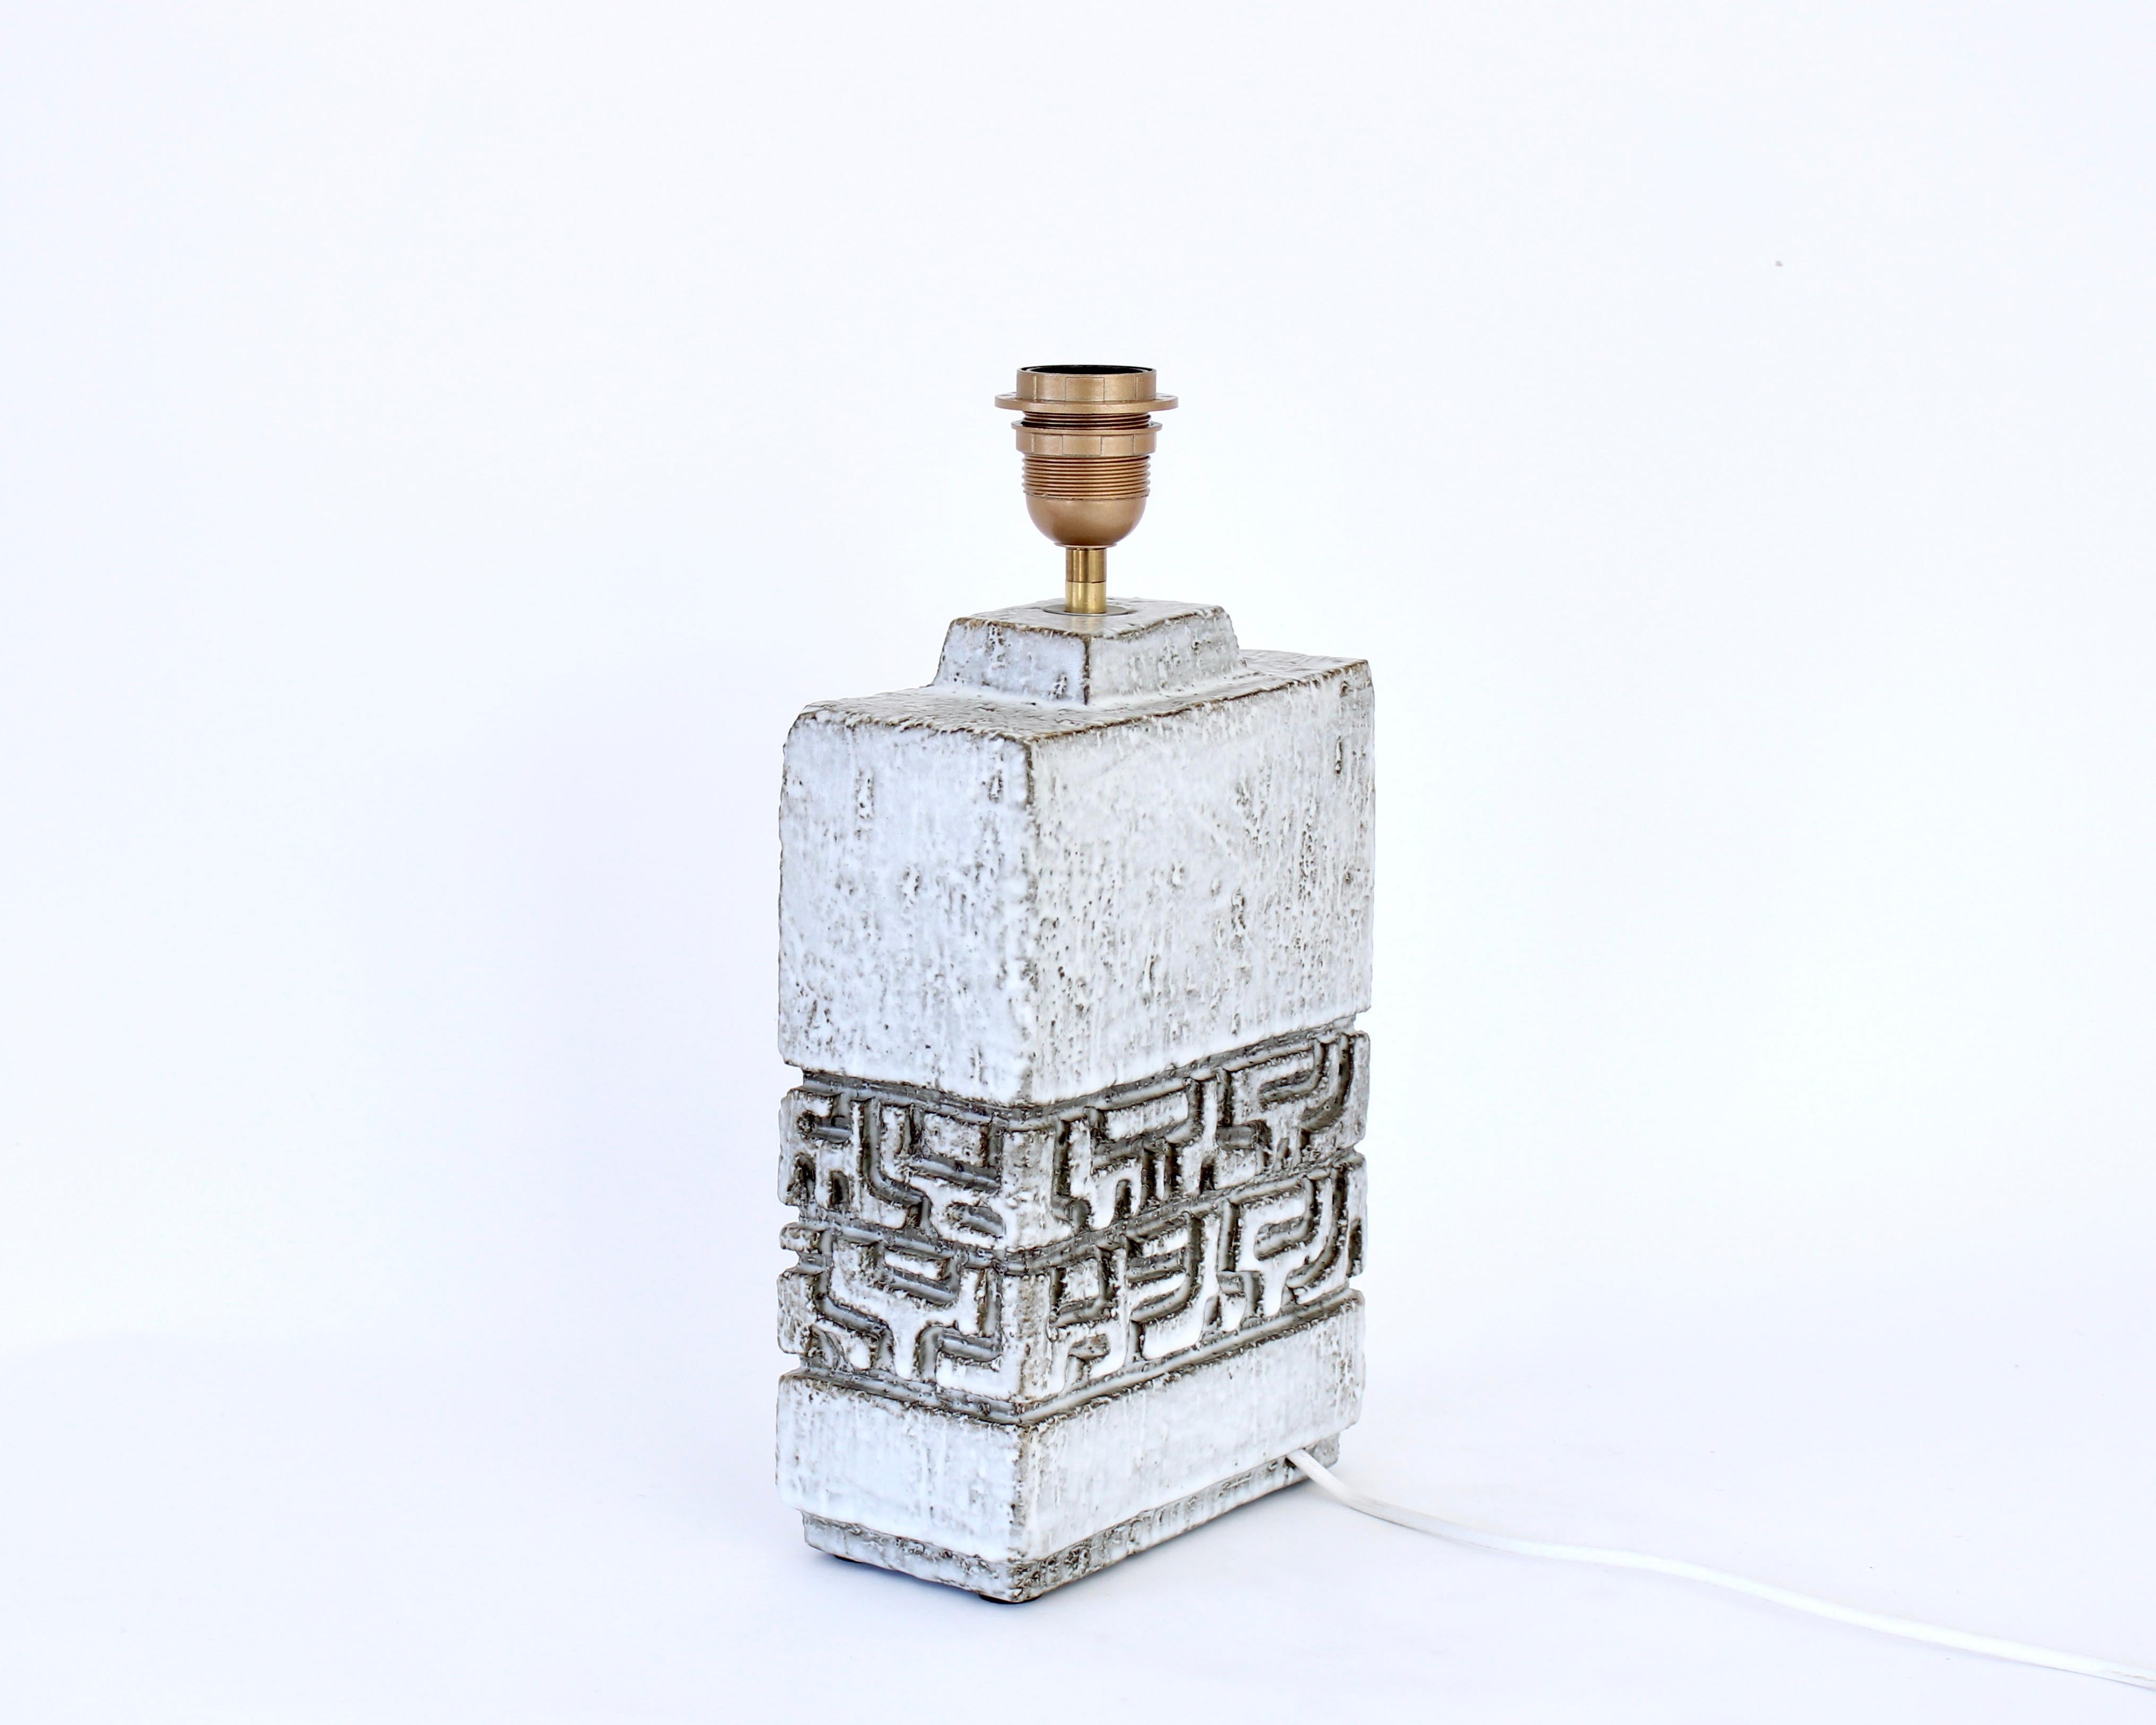 Mid-20th Century Marius Bessone Ceramic Table Lamp France c 1960 - 1970 Vallauris For Sale